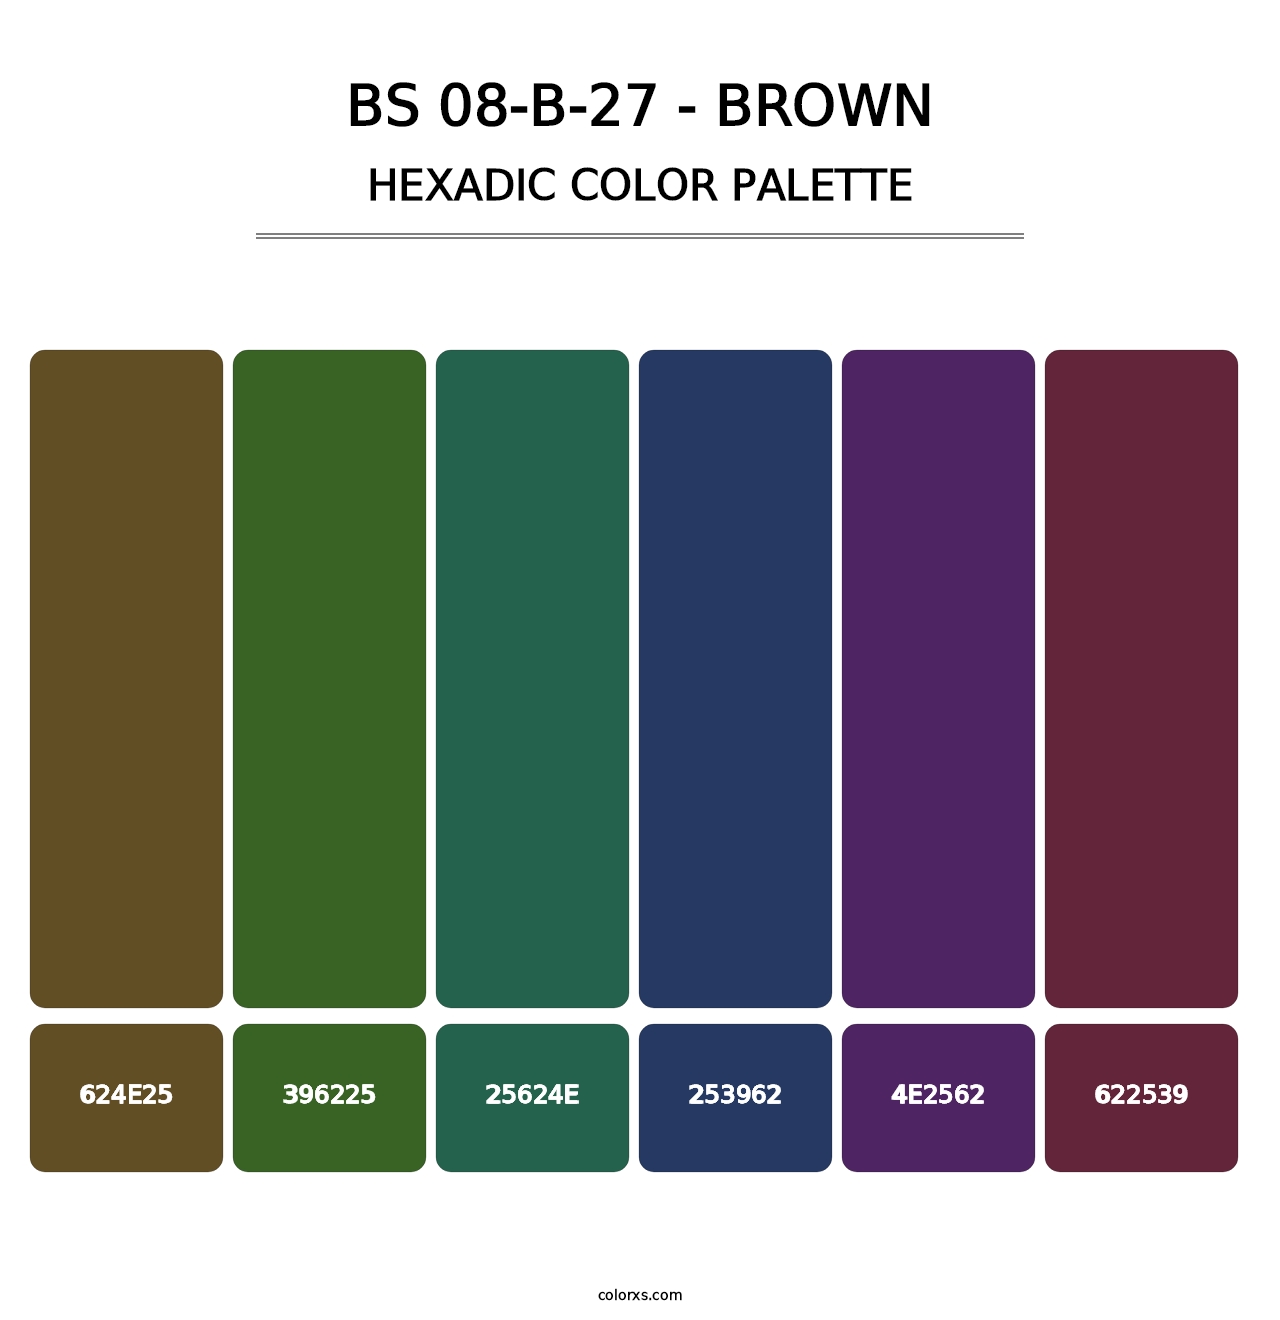 BS 08-B-27 - Brown - Hexadic Color Palette